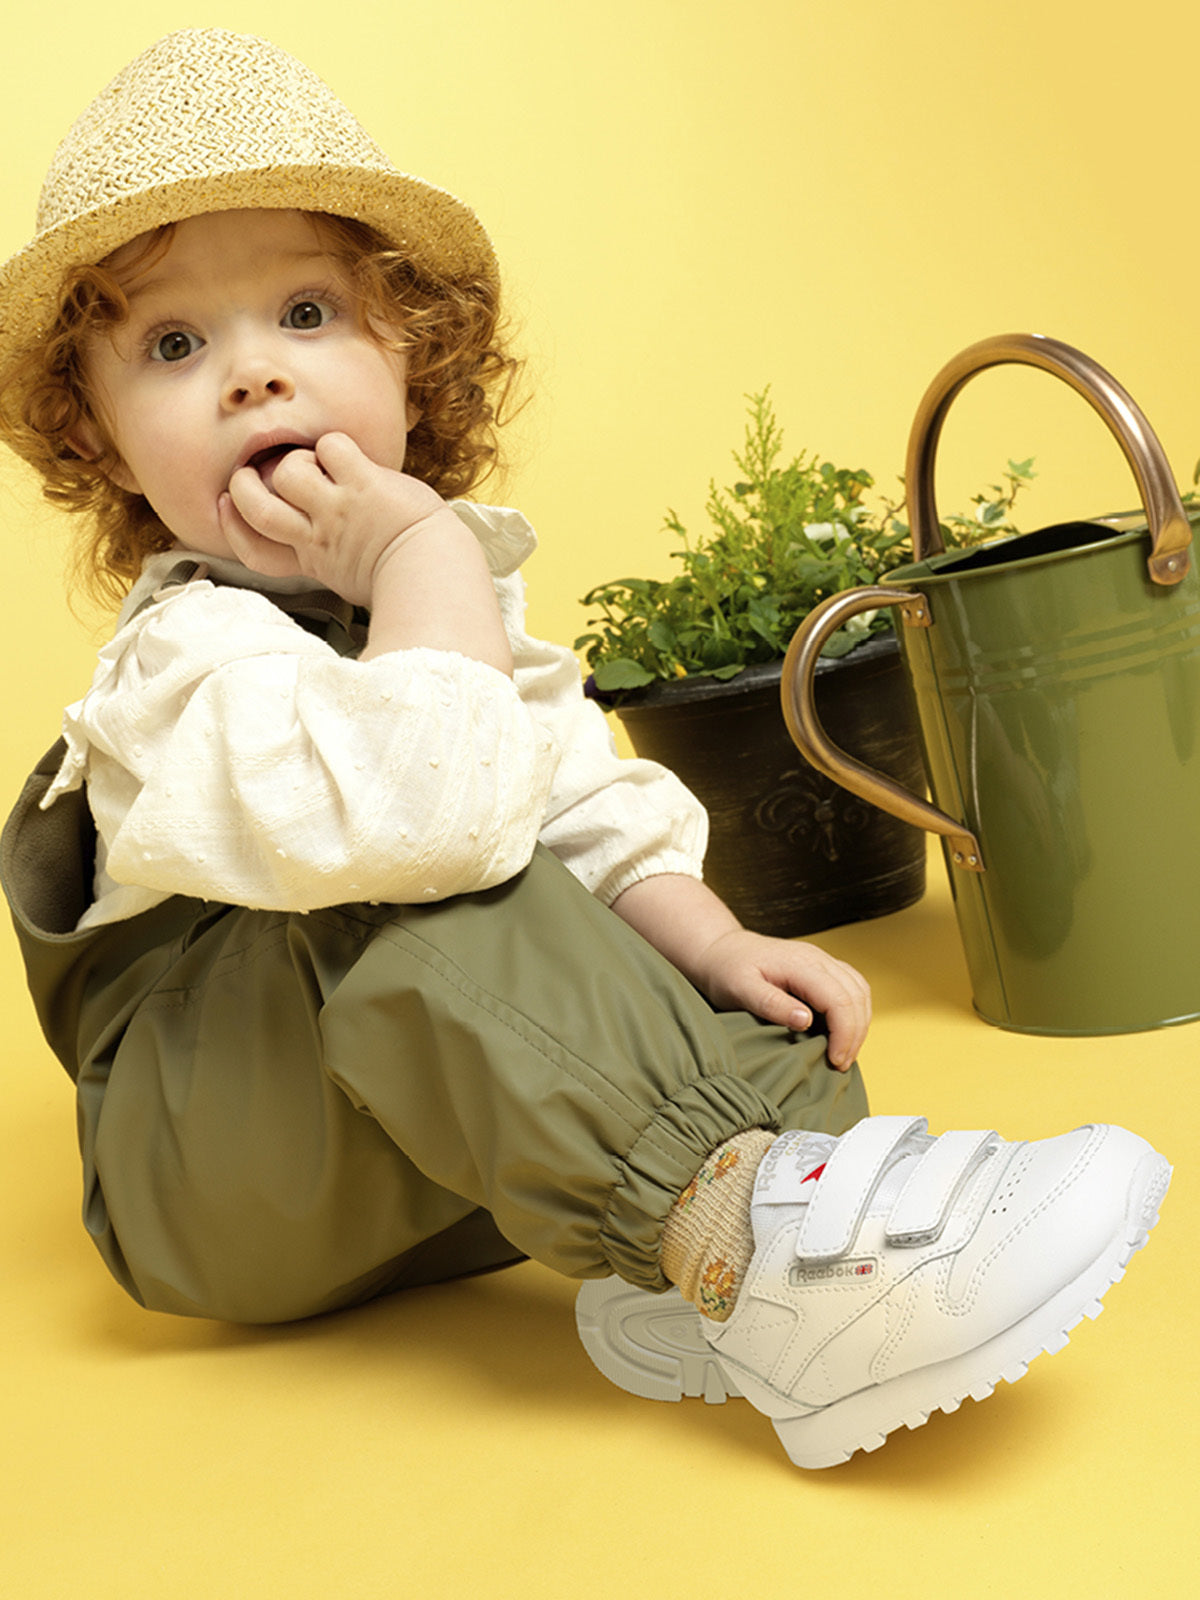 נעלי סניקרס CL LTHR 2V / תינוקות- Reebok|ריבוק